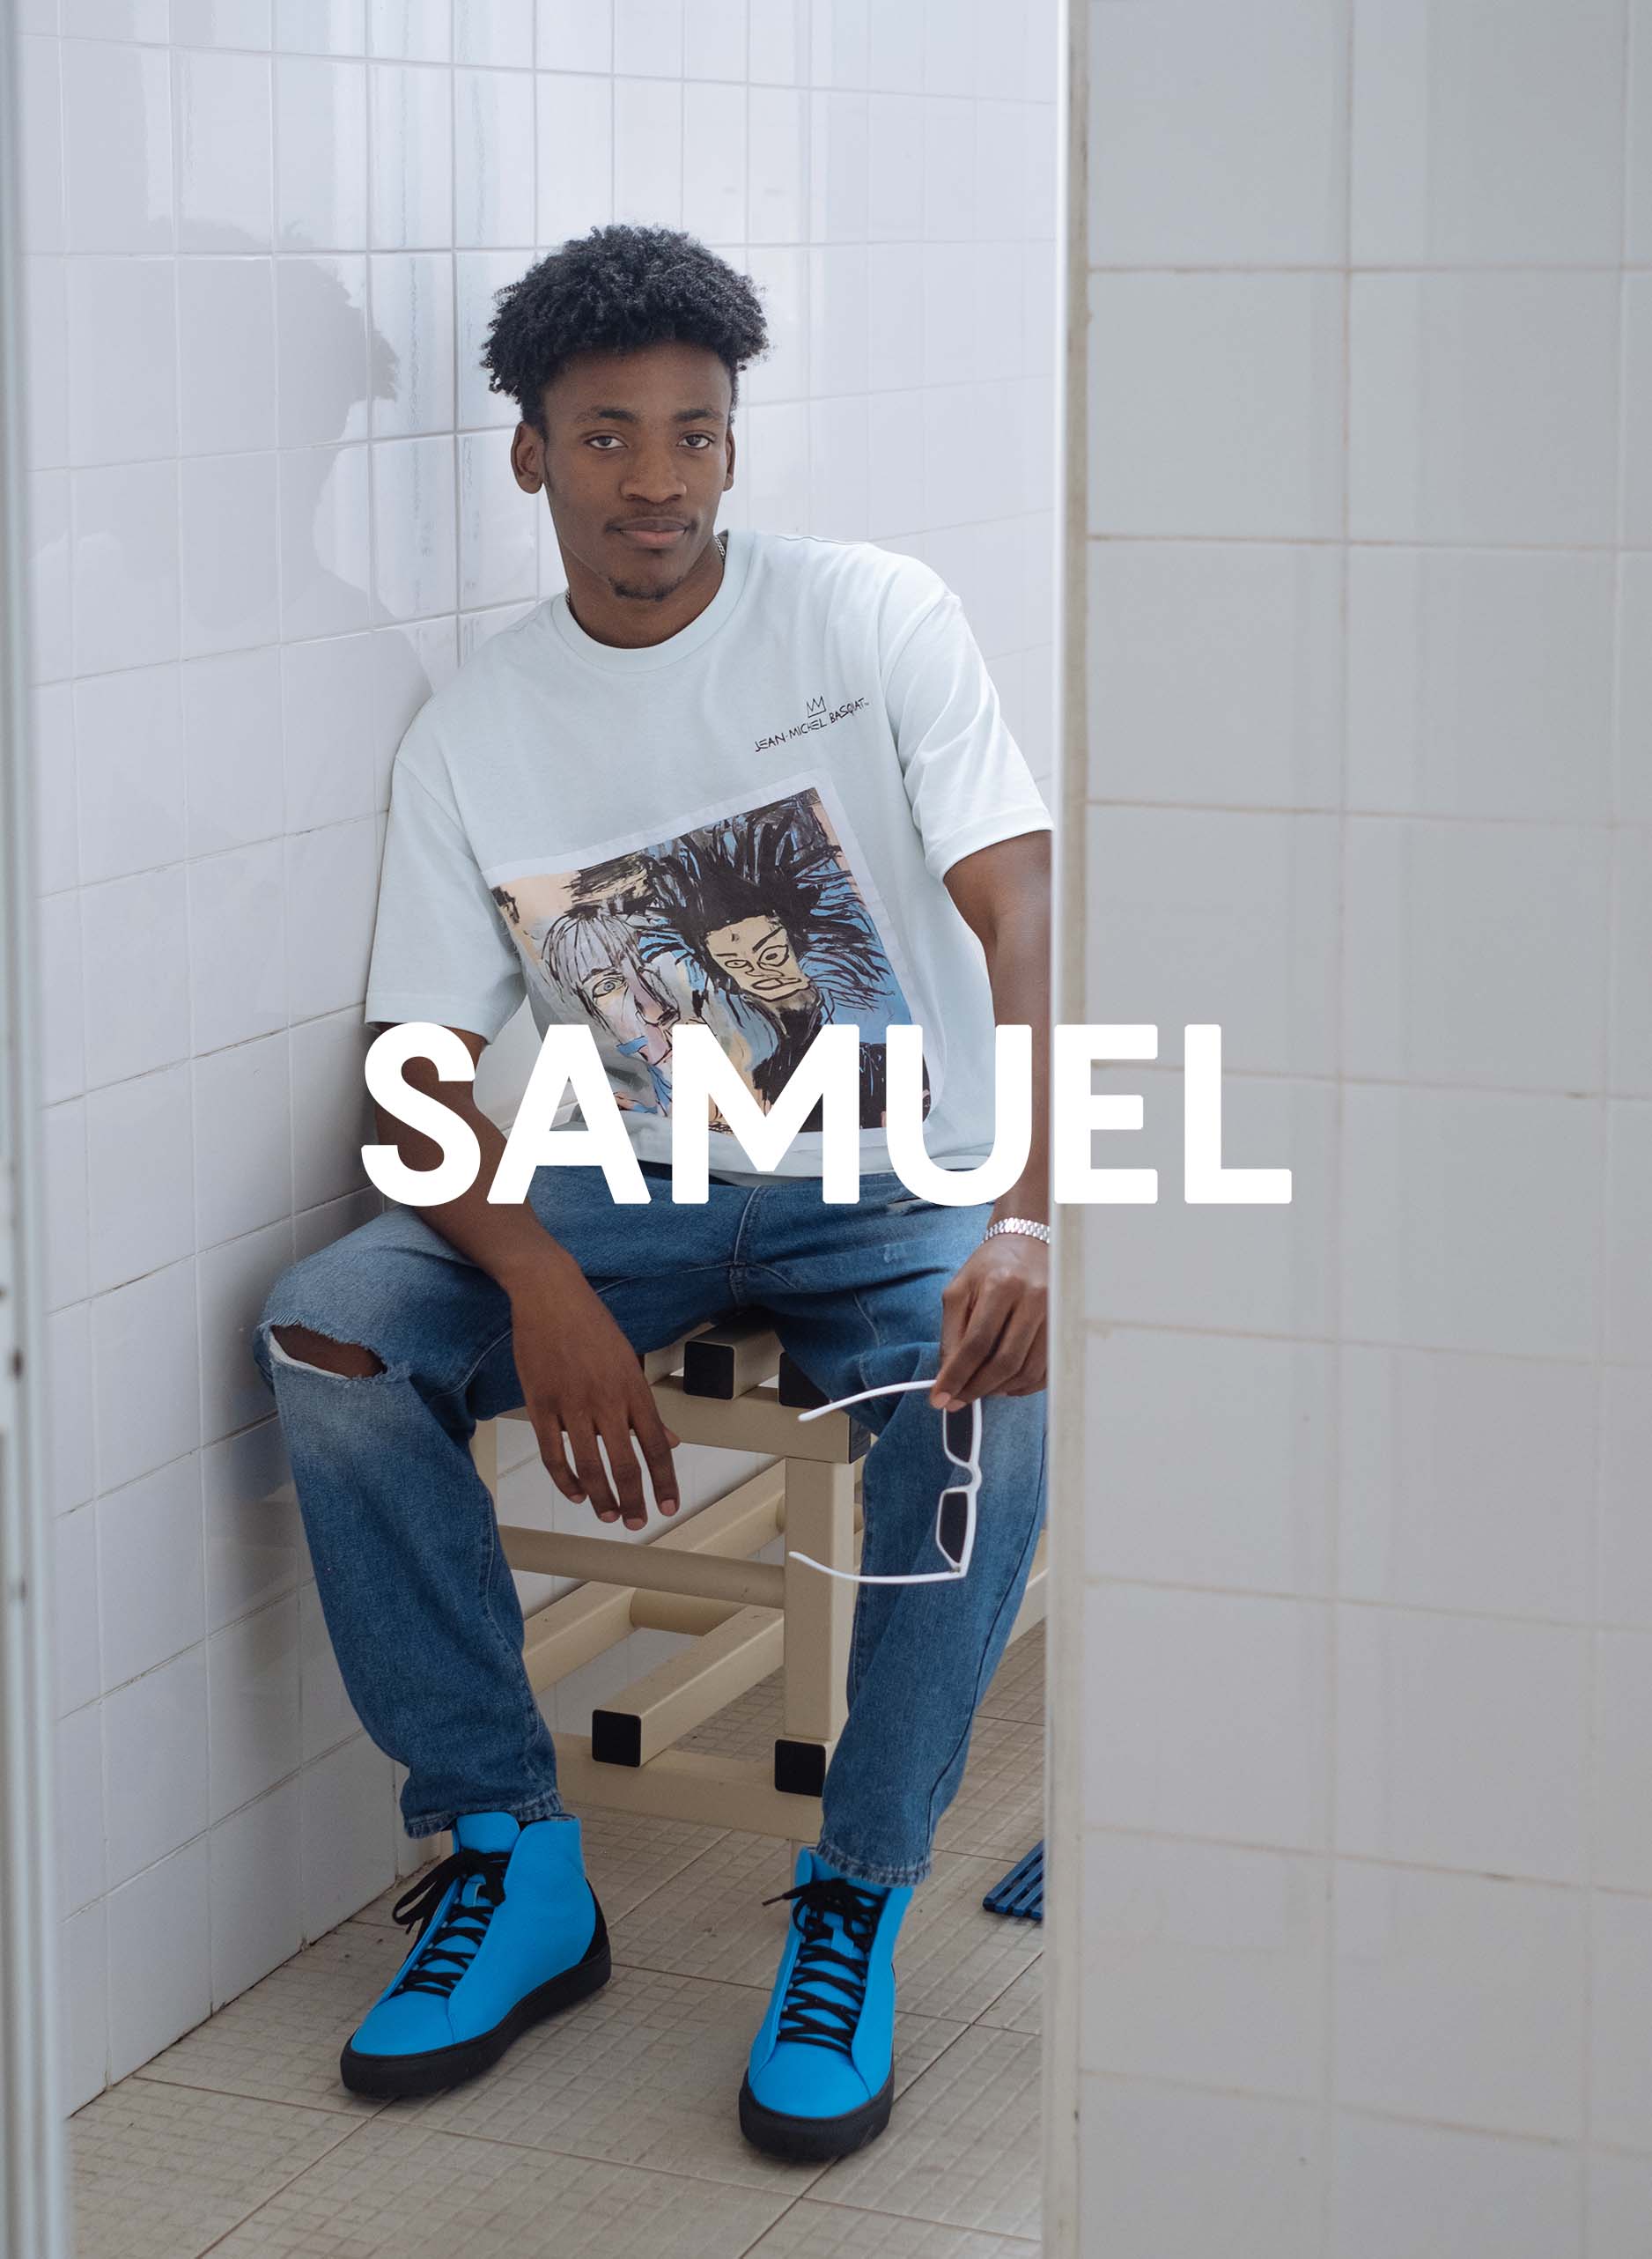 Samuel trägt Diverge sneakers und die Präsentation von sozialem Einfluss und maßgeschneiderten Schuhen im Rahmen des Imagine-Projekts.